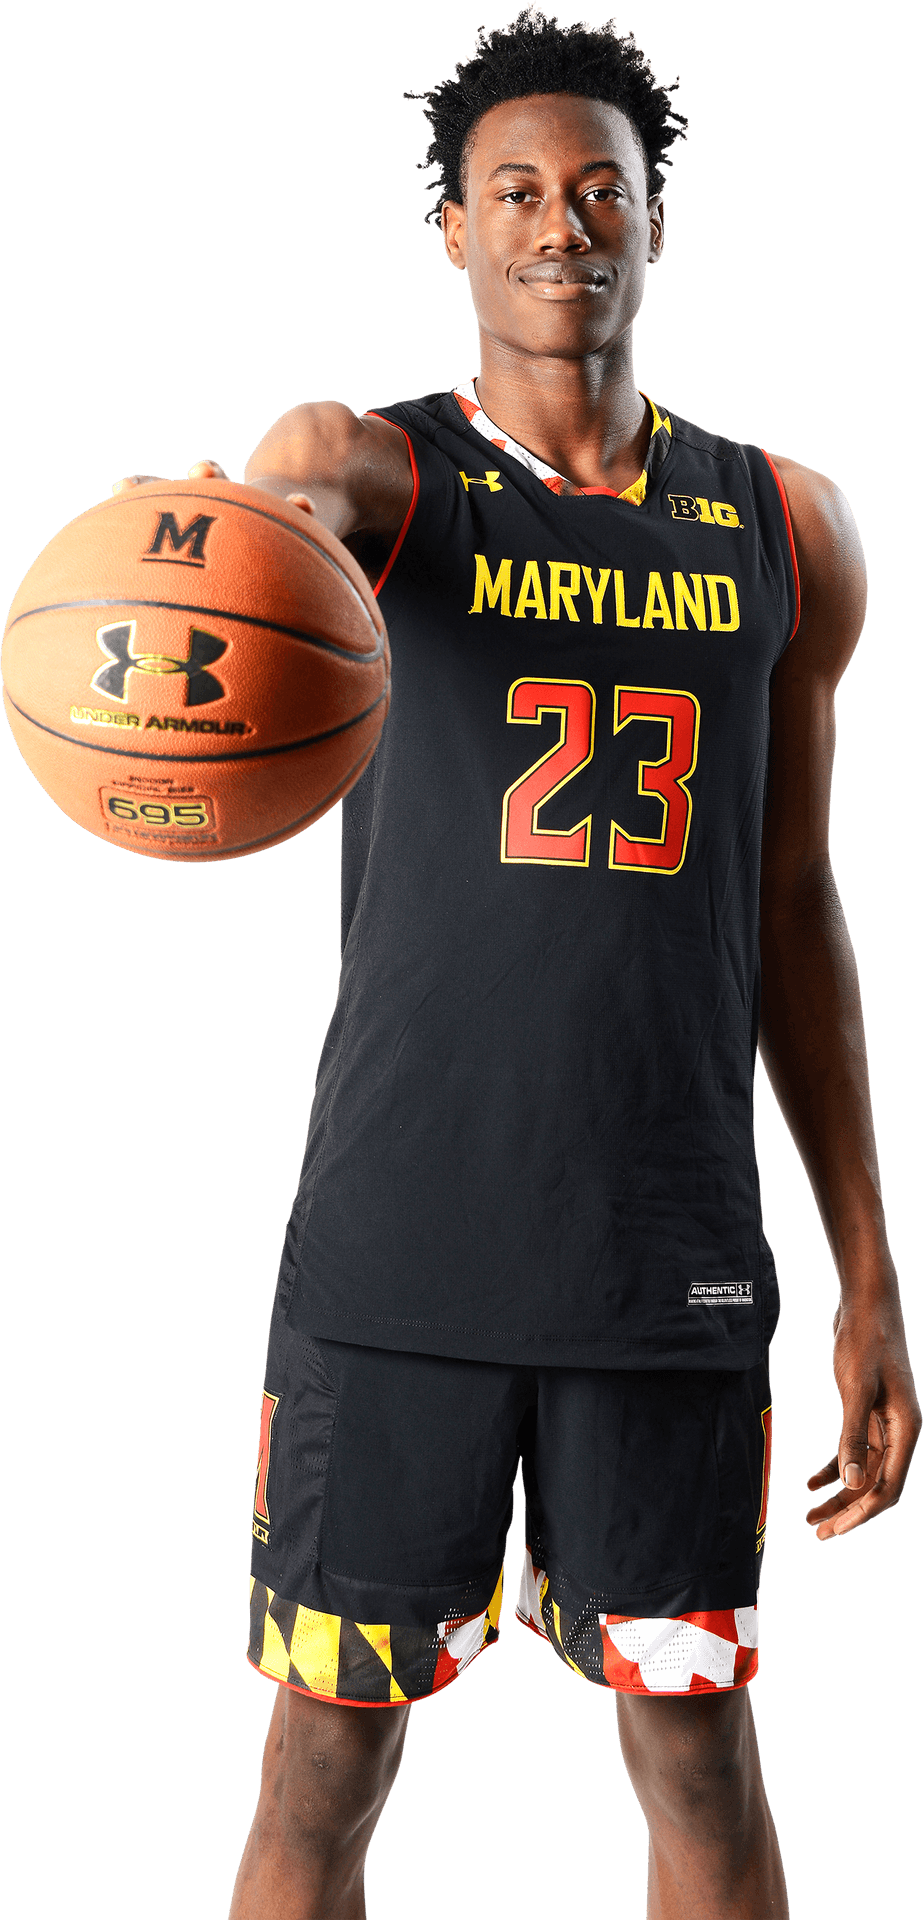 Maryland Basketball Player23 PNG